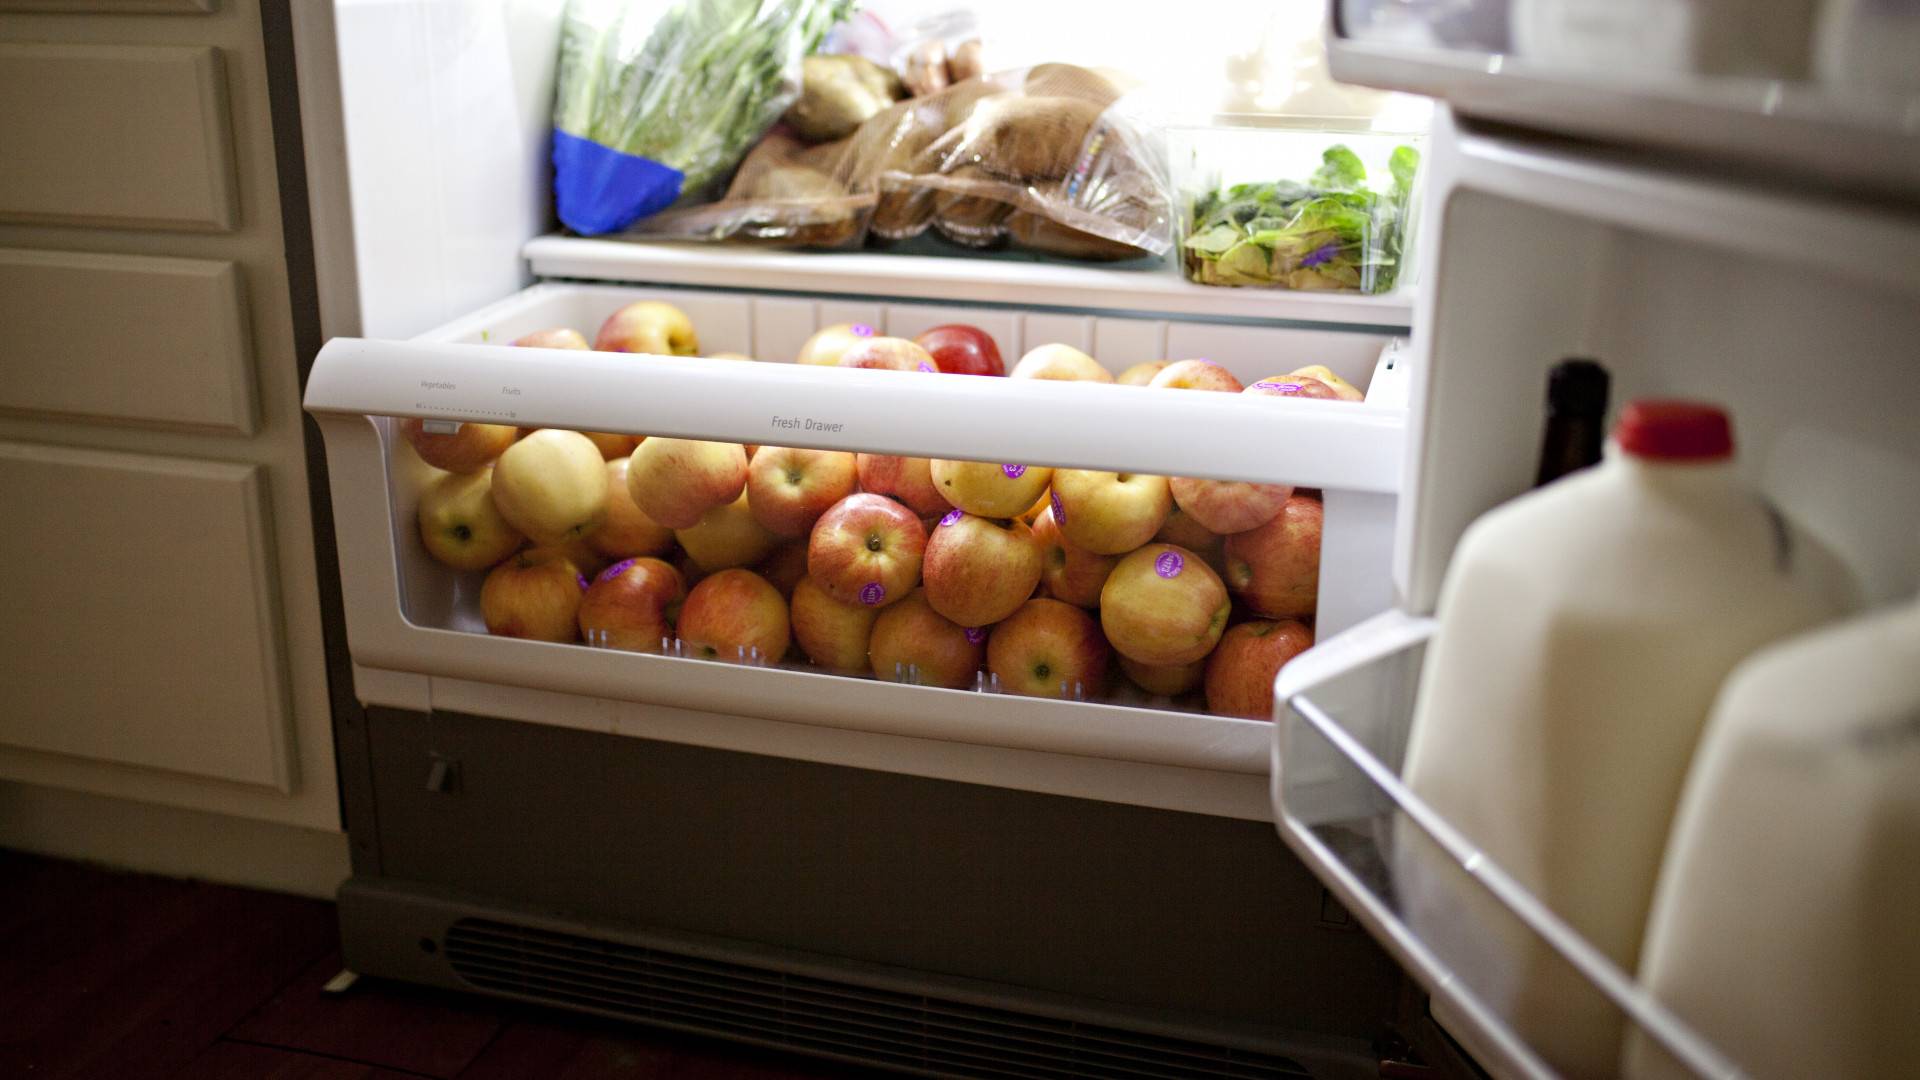 Как хранить продукты, если нет холодильника? история читательницы, прожившей без холодильника целый год